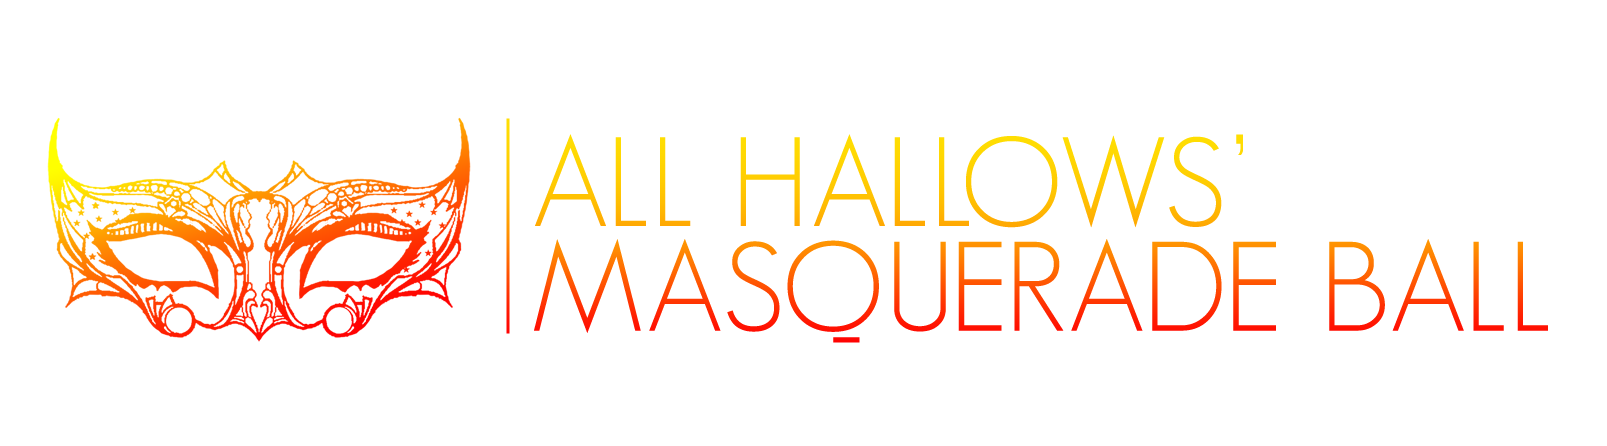 Tampa All Hallows' Masquerade Ball